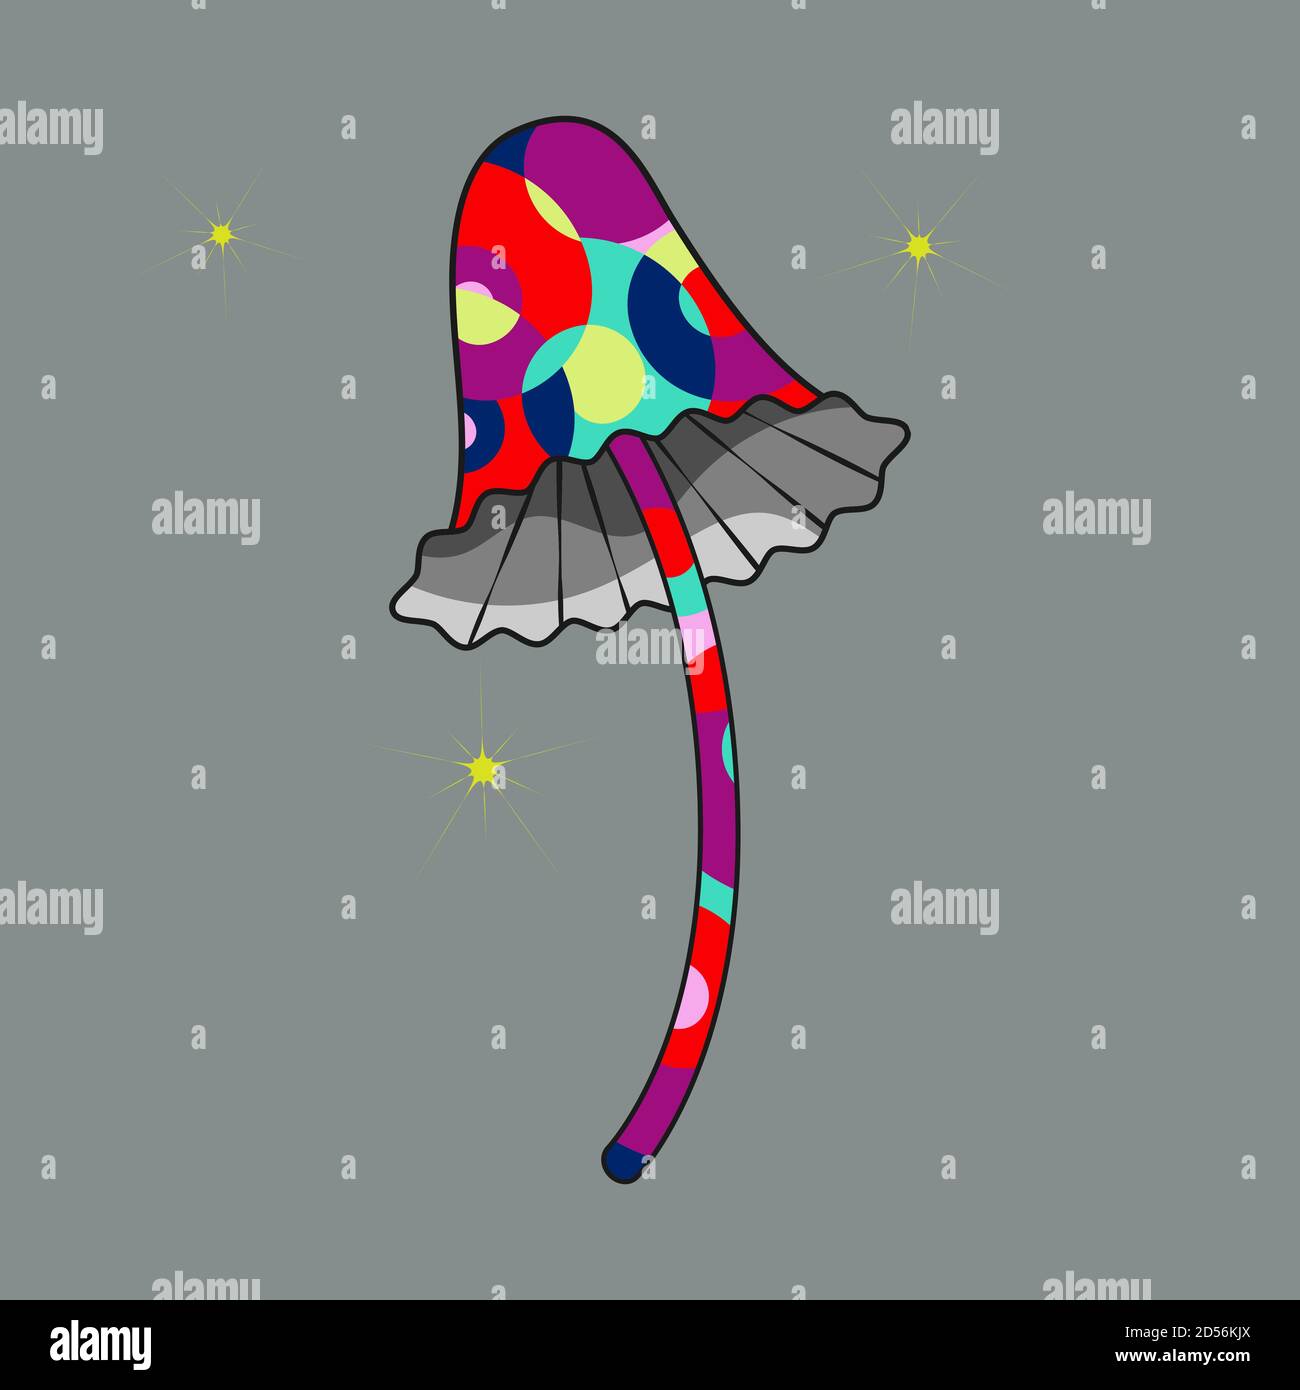 Icône en forme de champignon psilocybin, silhouette noire dans un style de dessin animé plat, illustration de couleur psychédélique dessinée à la main Illustration de Vecteur